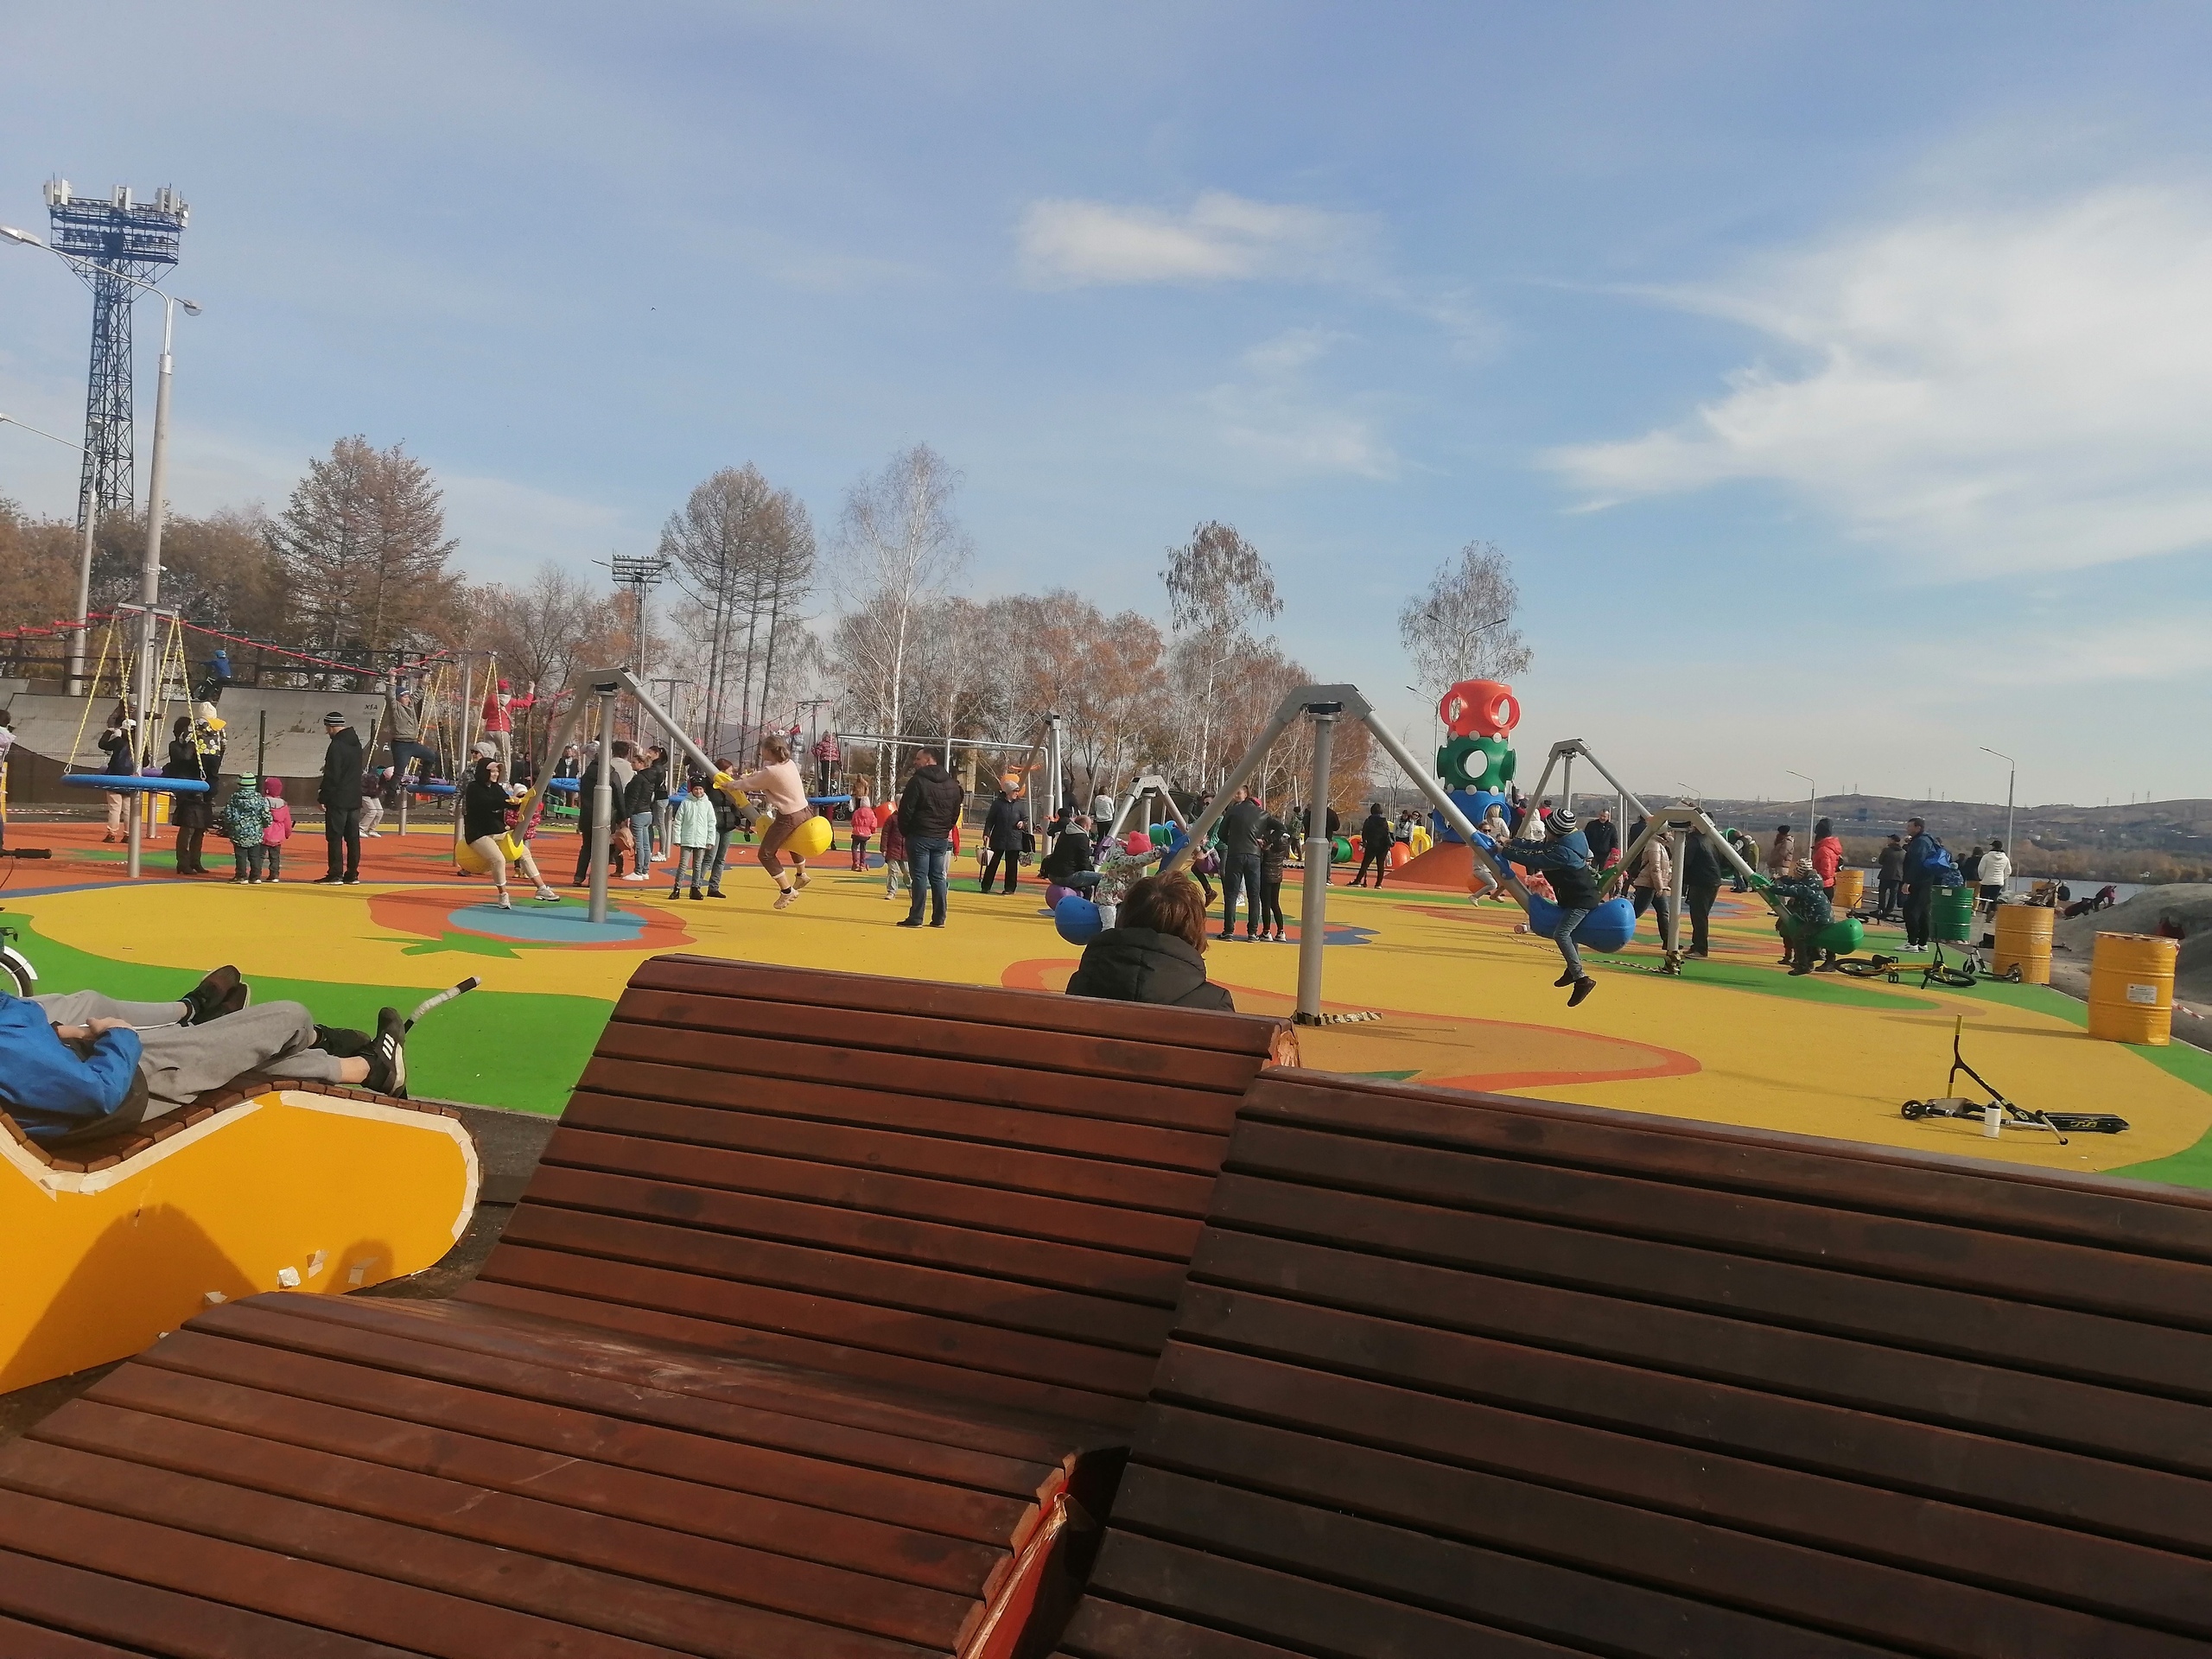 Такого формата еще не было»: в городе устанавливают современную детскую  площадку - Новости Магнитогорска - Магсити74